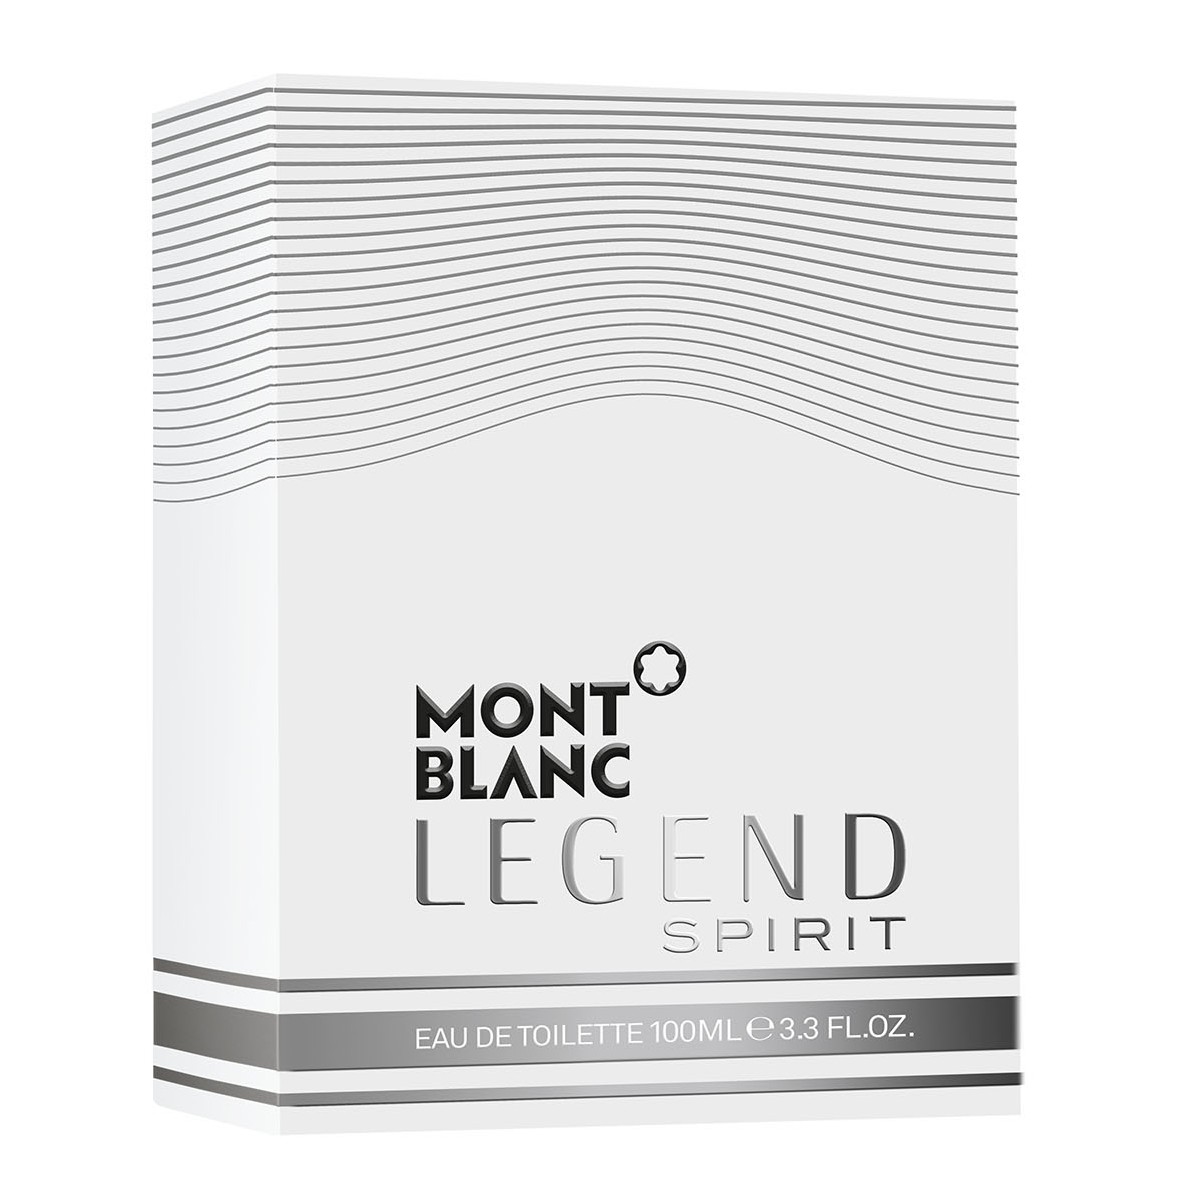 Montblanc Legend Spirit Eau de Toilette 100ml